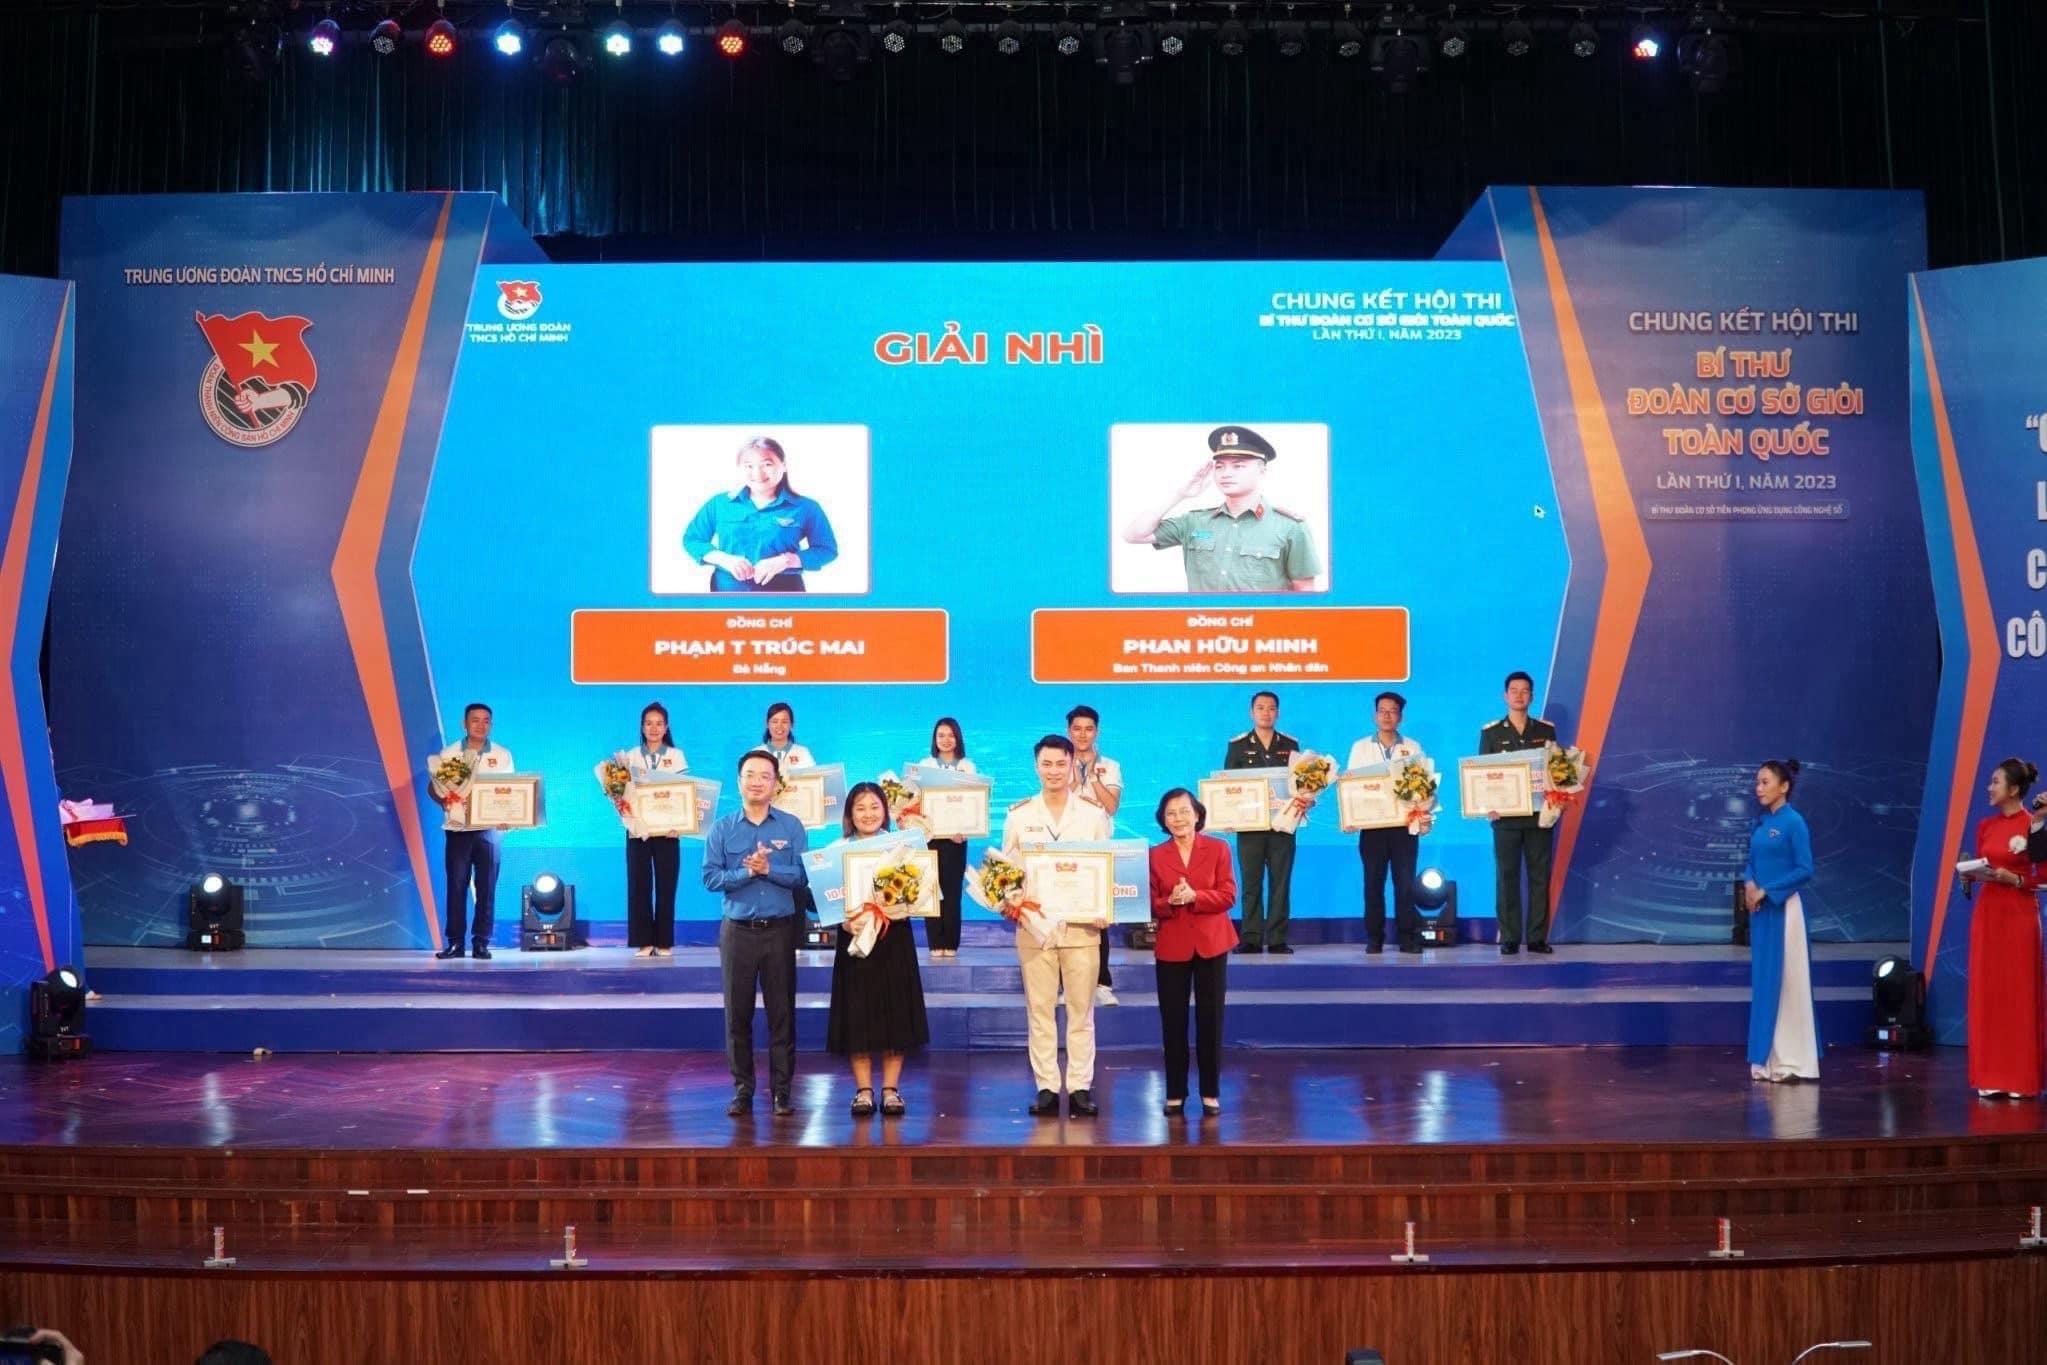 Đà Nẵng đoạt giải Nhì hội thi Bí thư Đoàn cơ sở giỏi toàn quốc